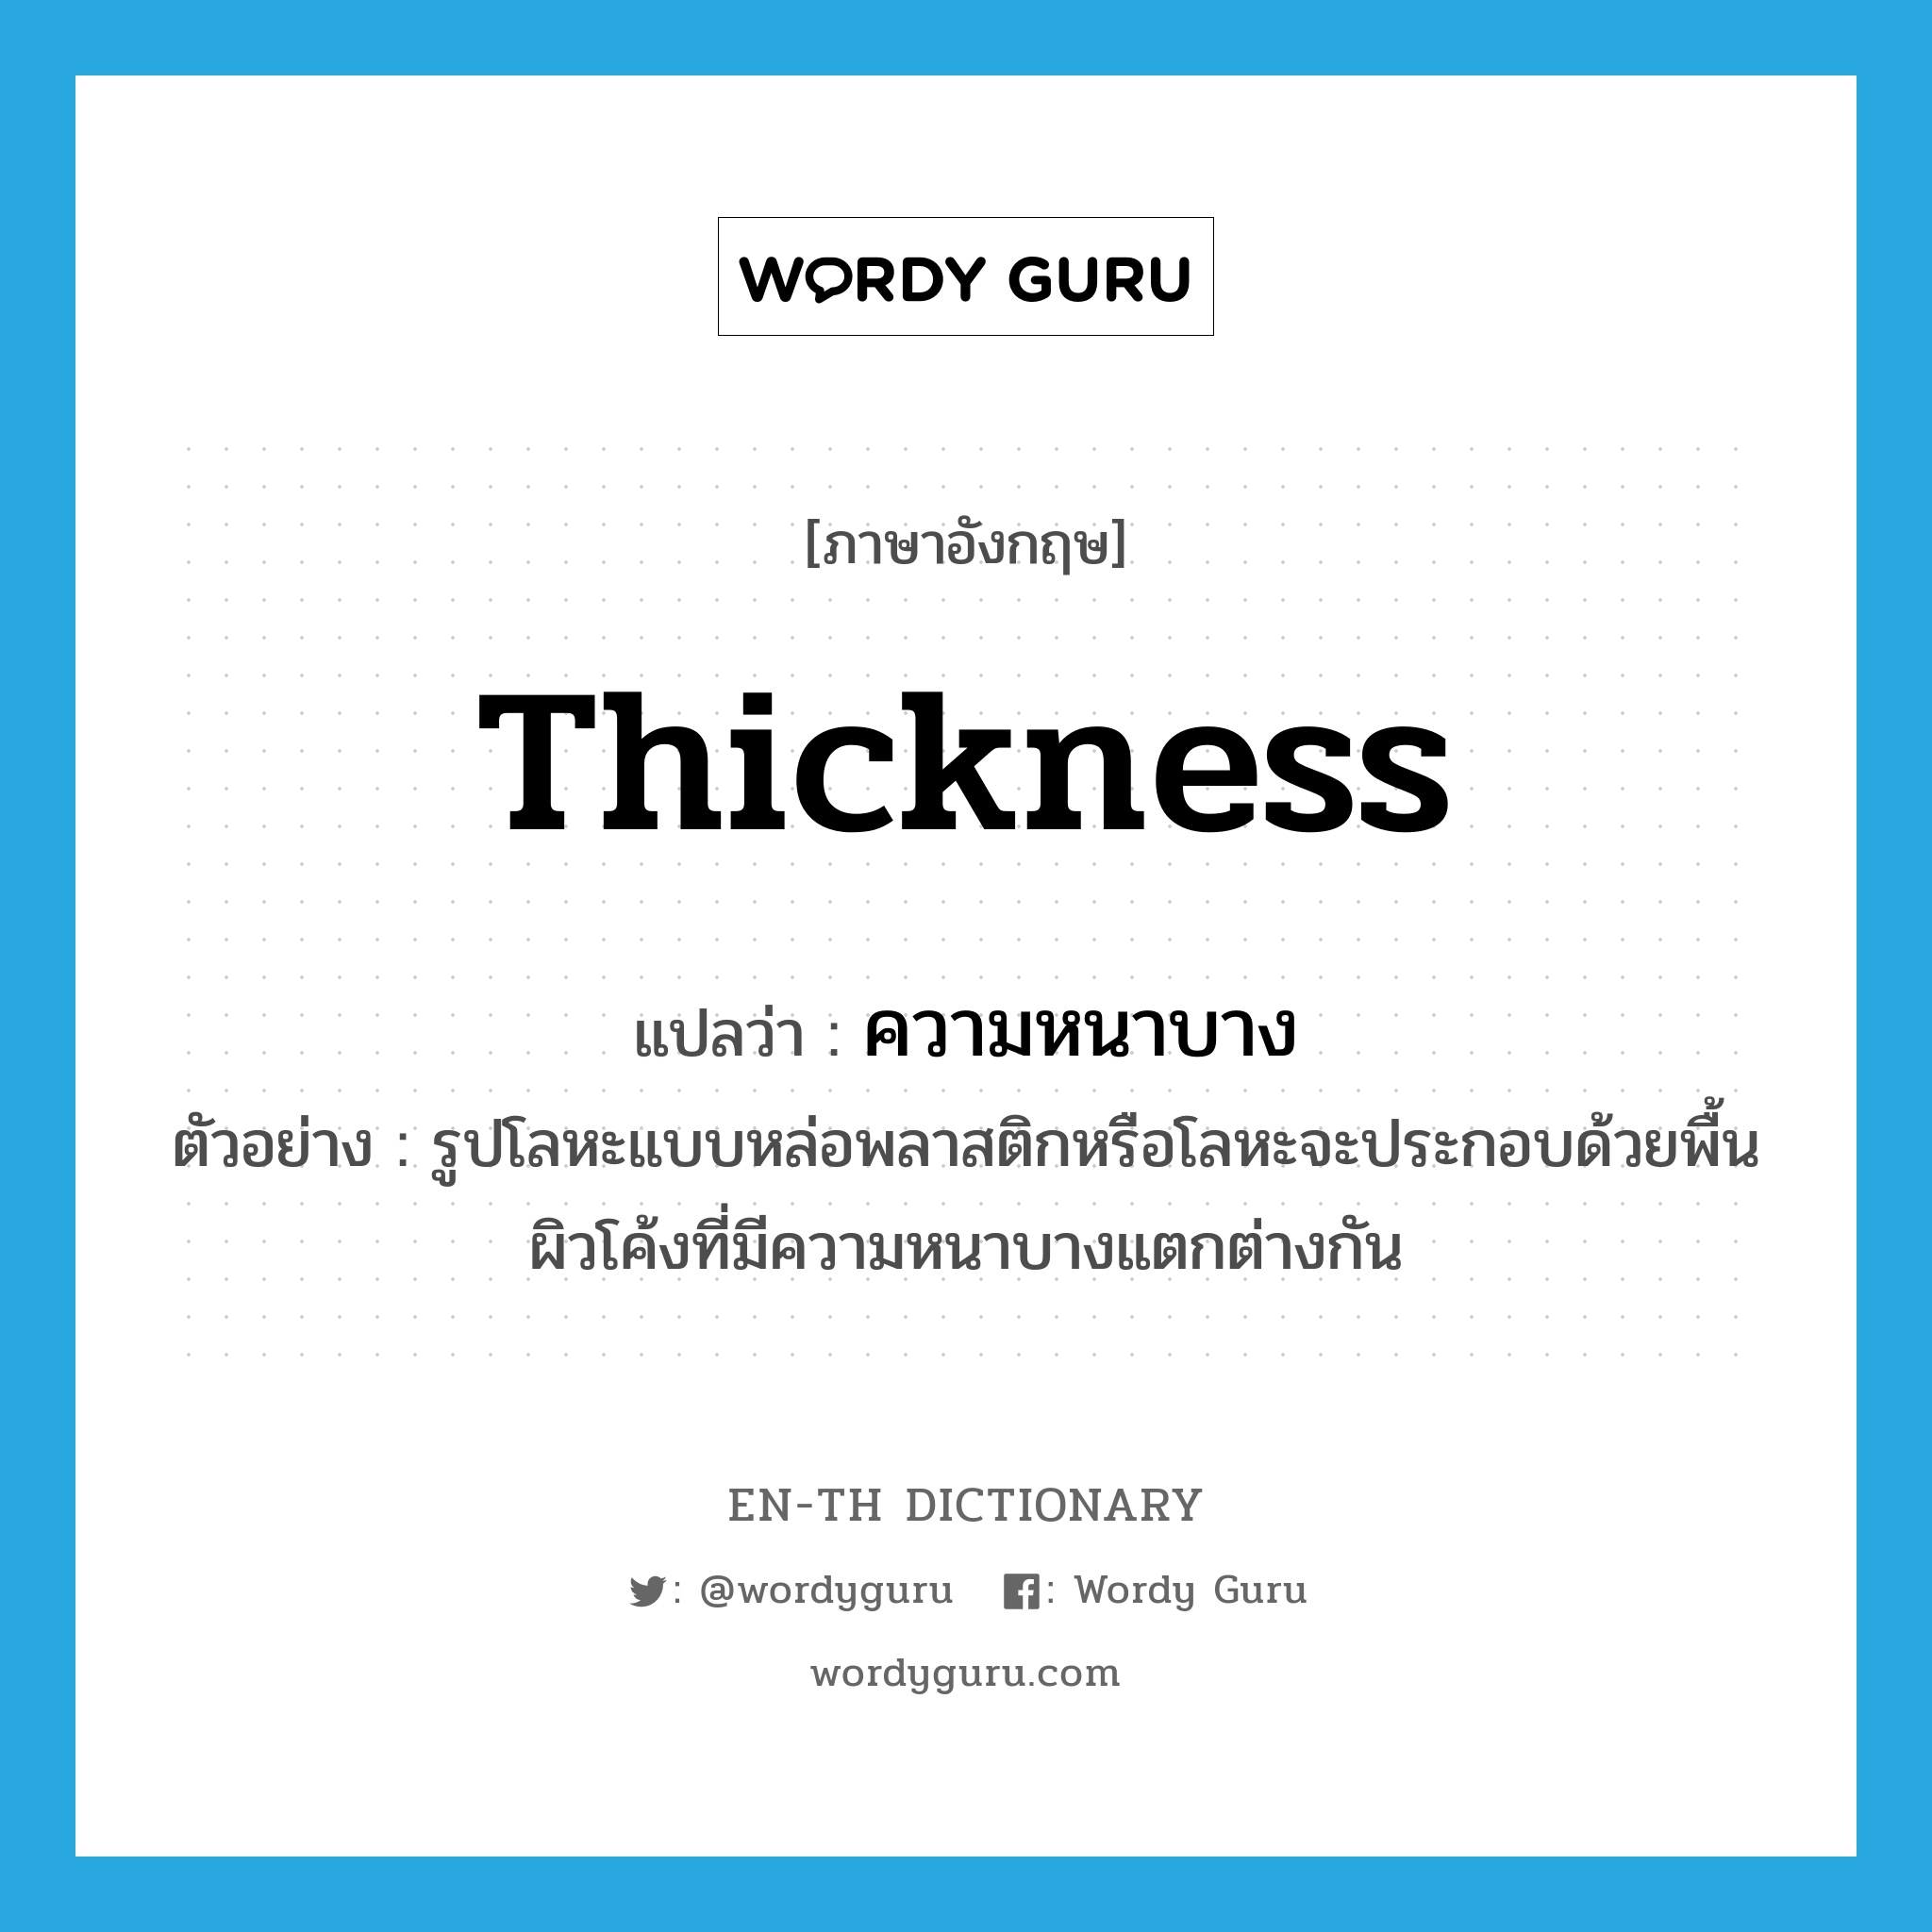 thickness แปลว่า?, คำศัพท์ภาษาอังกฤษ thickness แปลว่า ความหนาบาง ประเภท N ตัวอย่าง รูปโลหะแบบหล่อพลาสติกหรือโลหะจะประกอบด้วยพื้นผิวโค้งที่มีความหนาบางแตกต่างกัน หมวด N